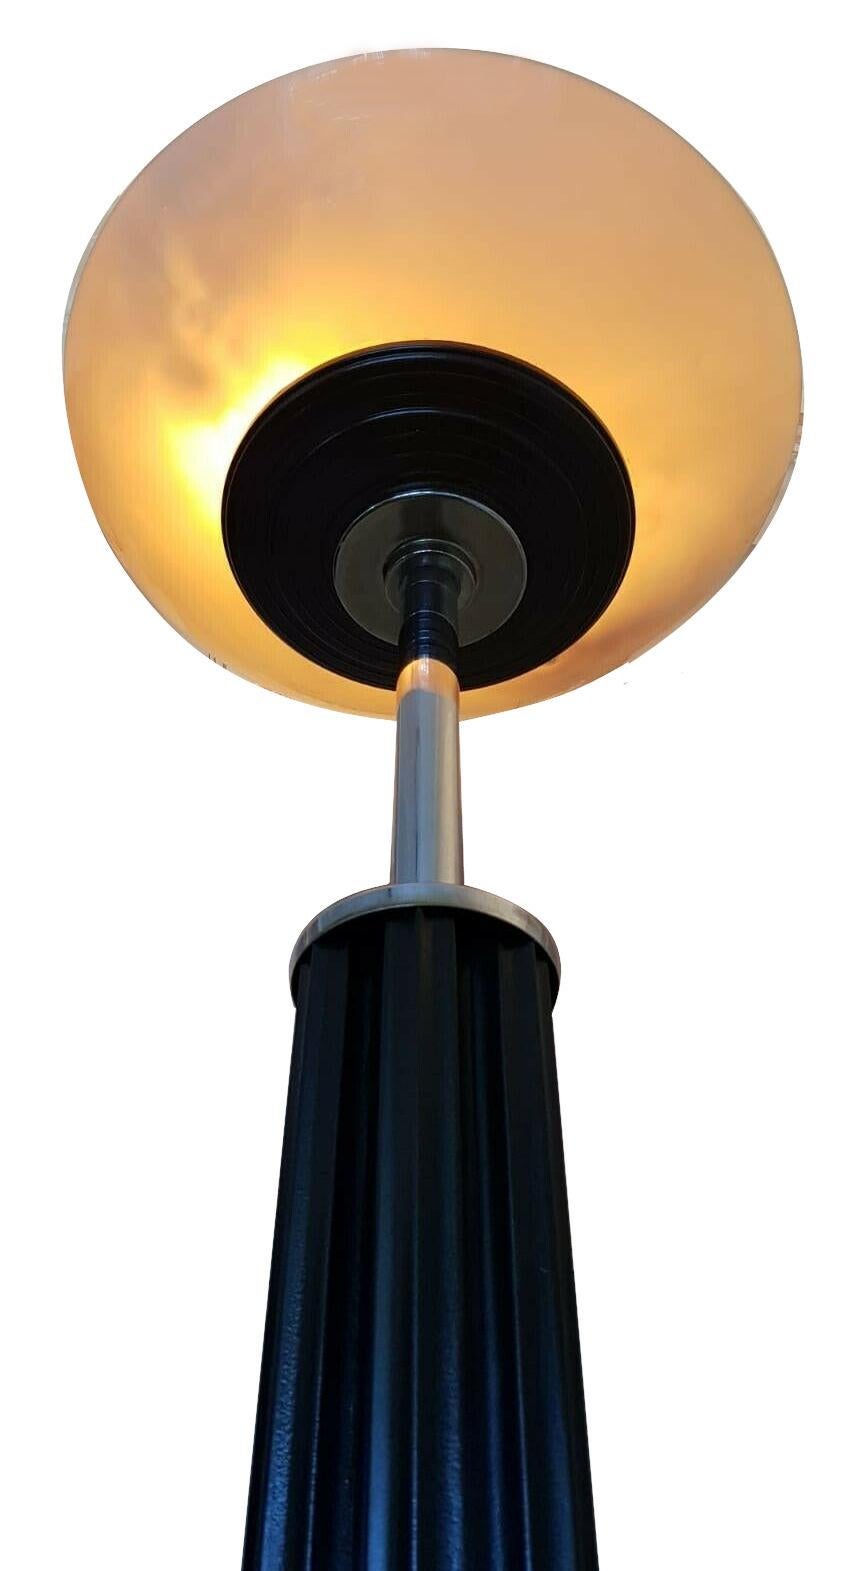 English Art Deco Bakelite & Chrome Uplighter Floor Lamp, 1930s